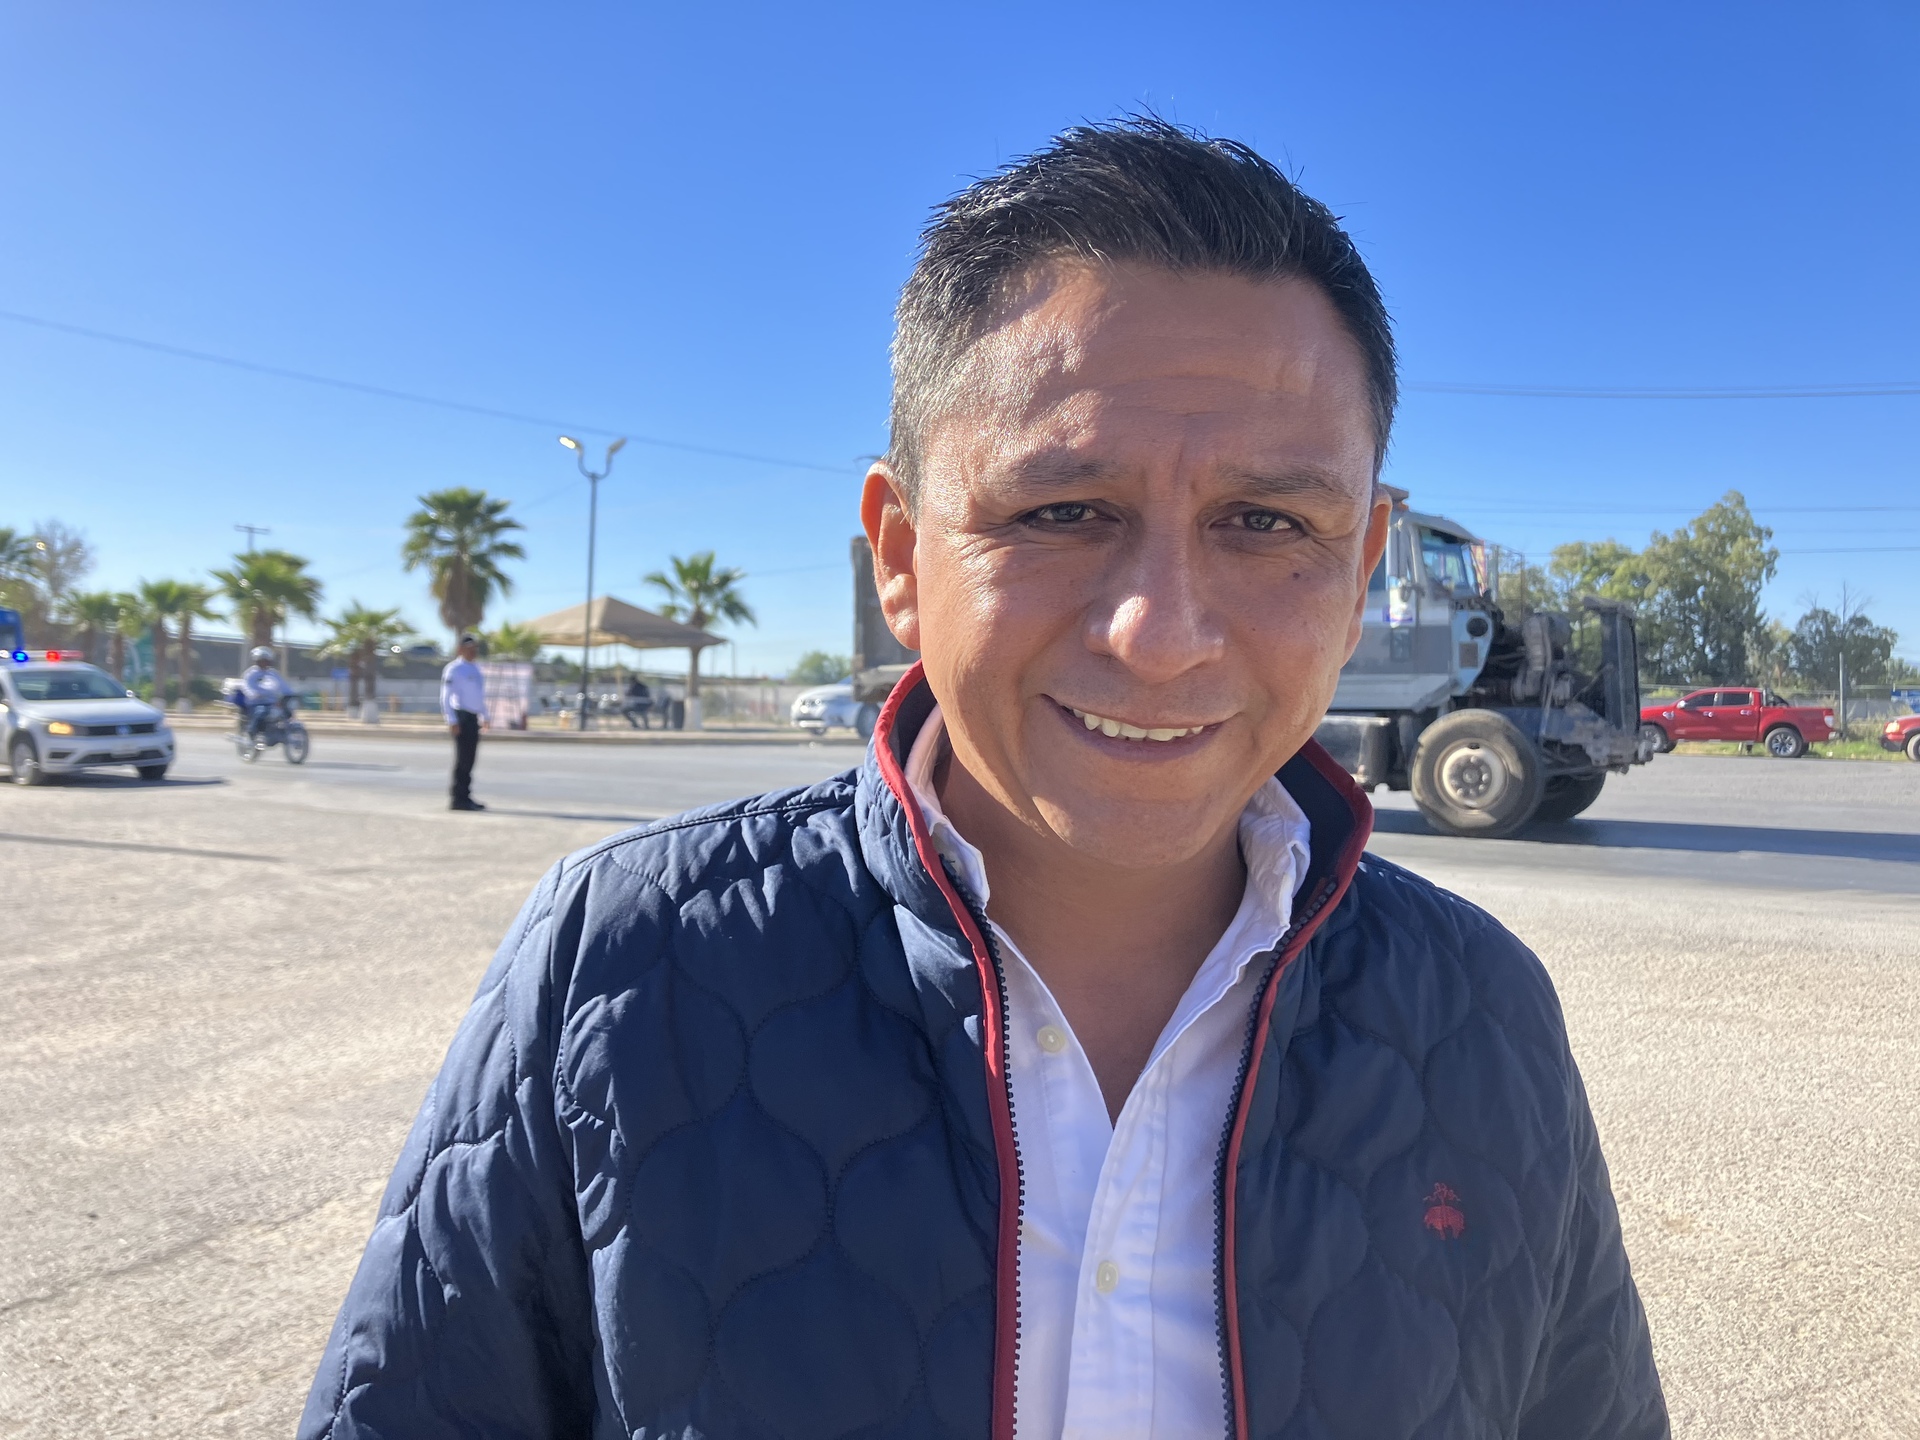 Prohición de fiestas en la calle es por seguridad: Alcalde Matamoros